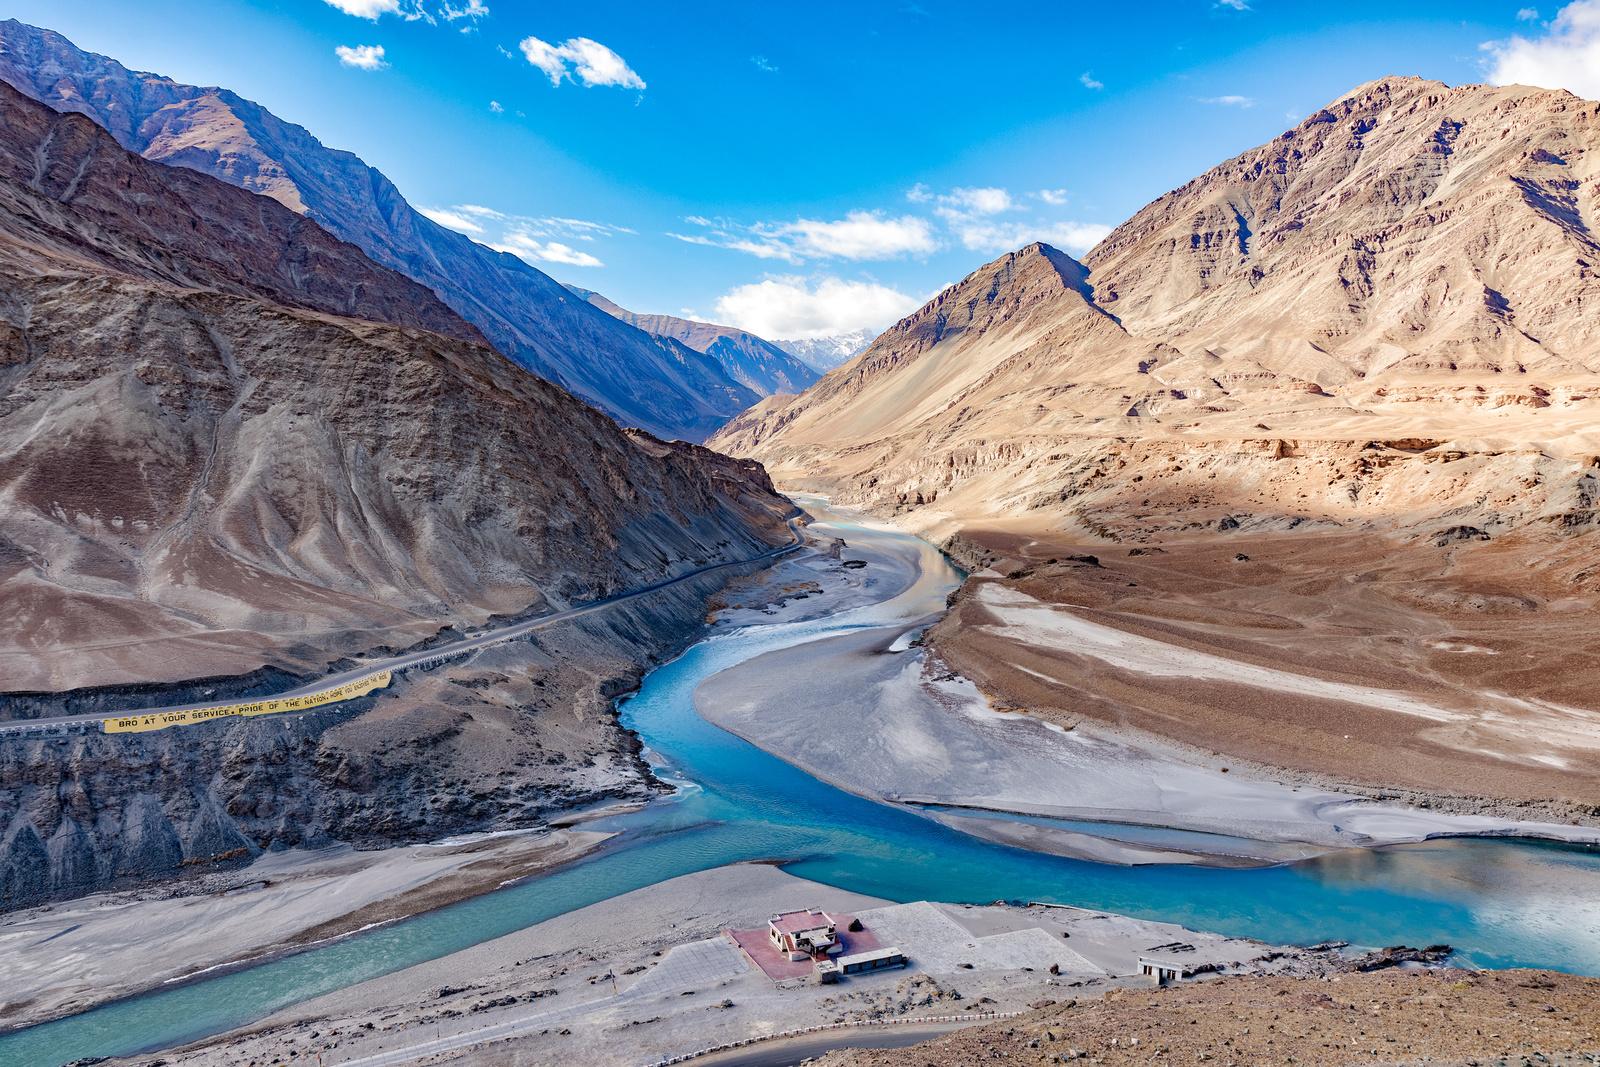 Indus River - Ladakh